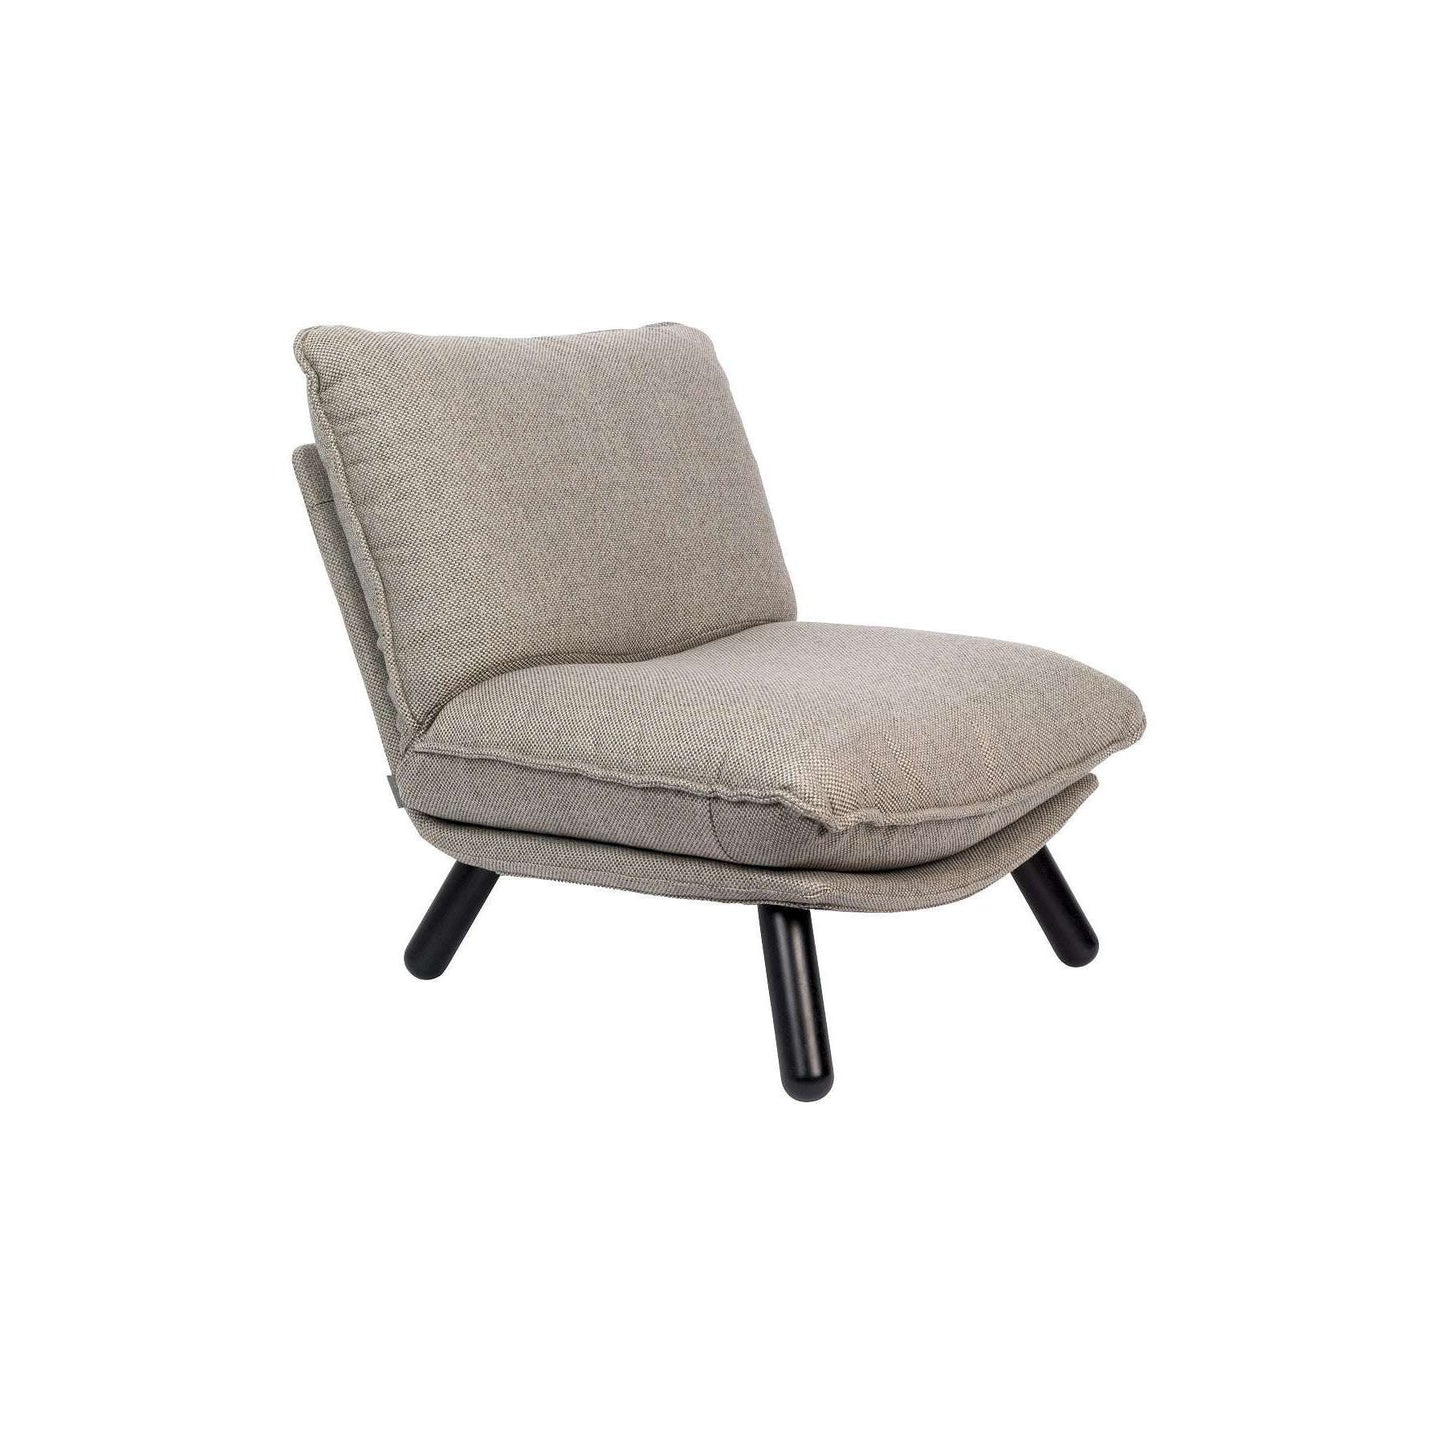 Zuiver fauteuil lazy sack licht grijs 94 x 75 x 81 cm